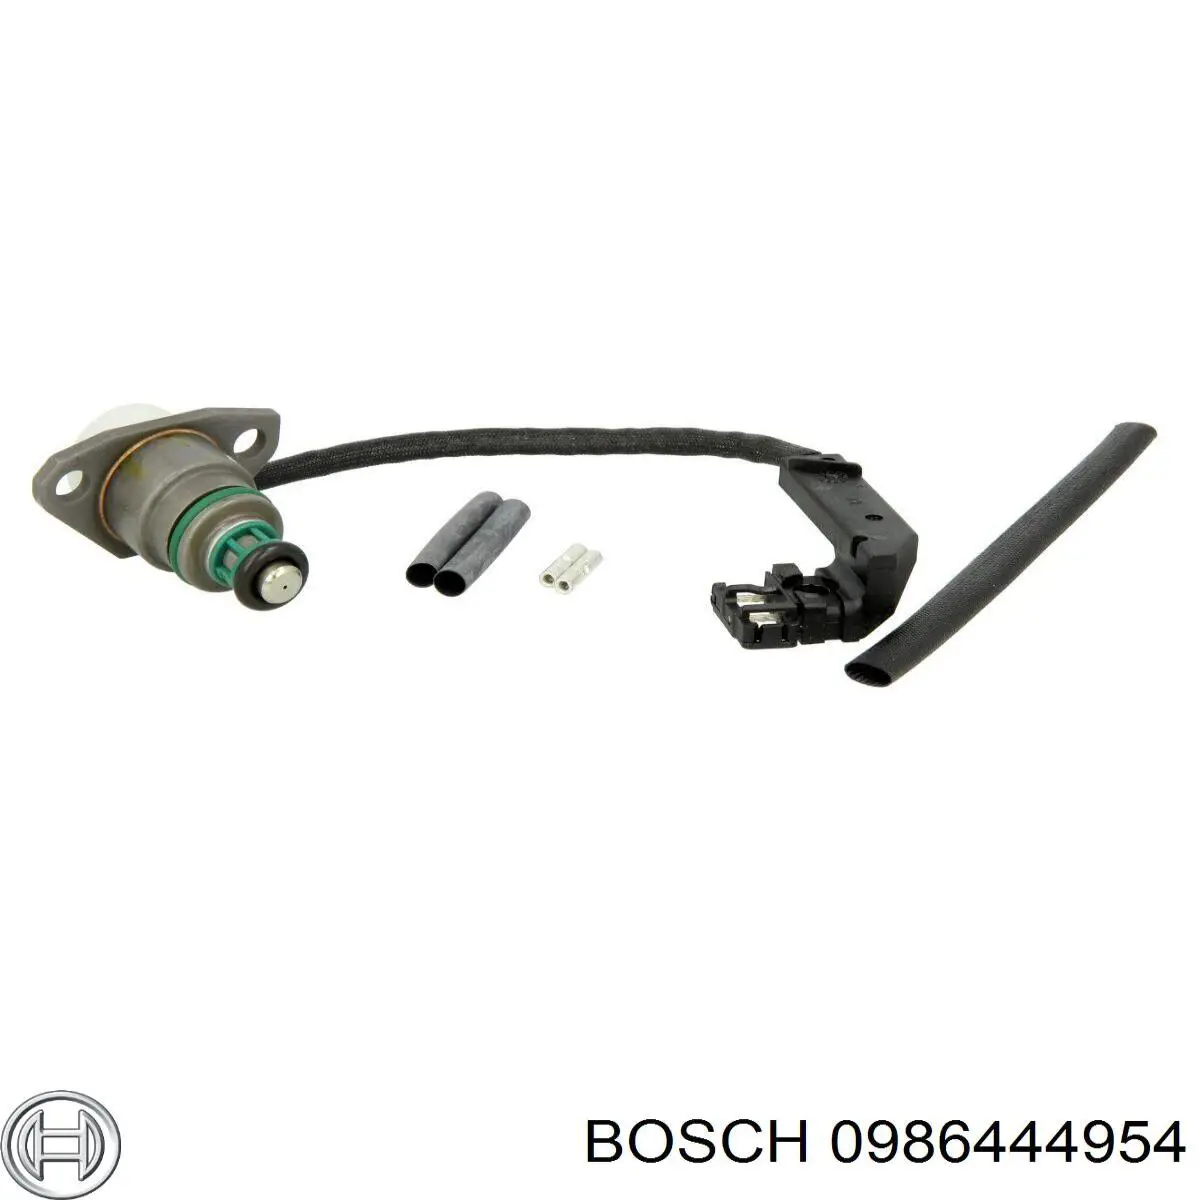 986444954 Bosch клапан регулировки давления (редукционный клапан тнвд Common-Rail-System)